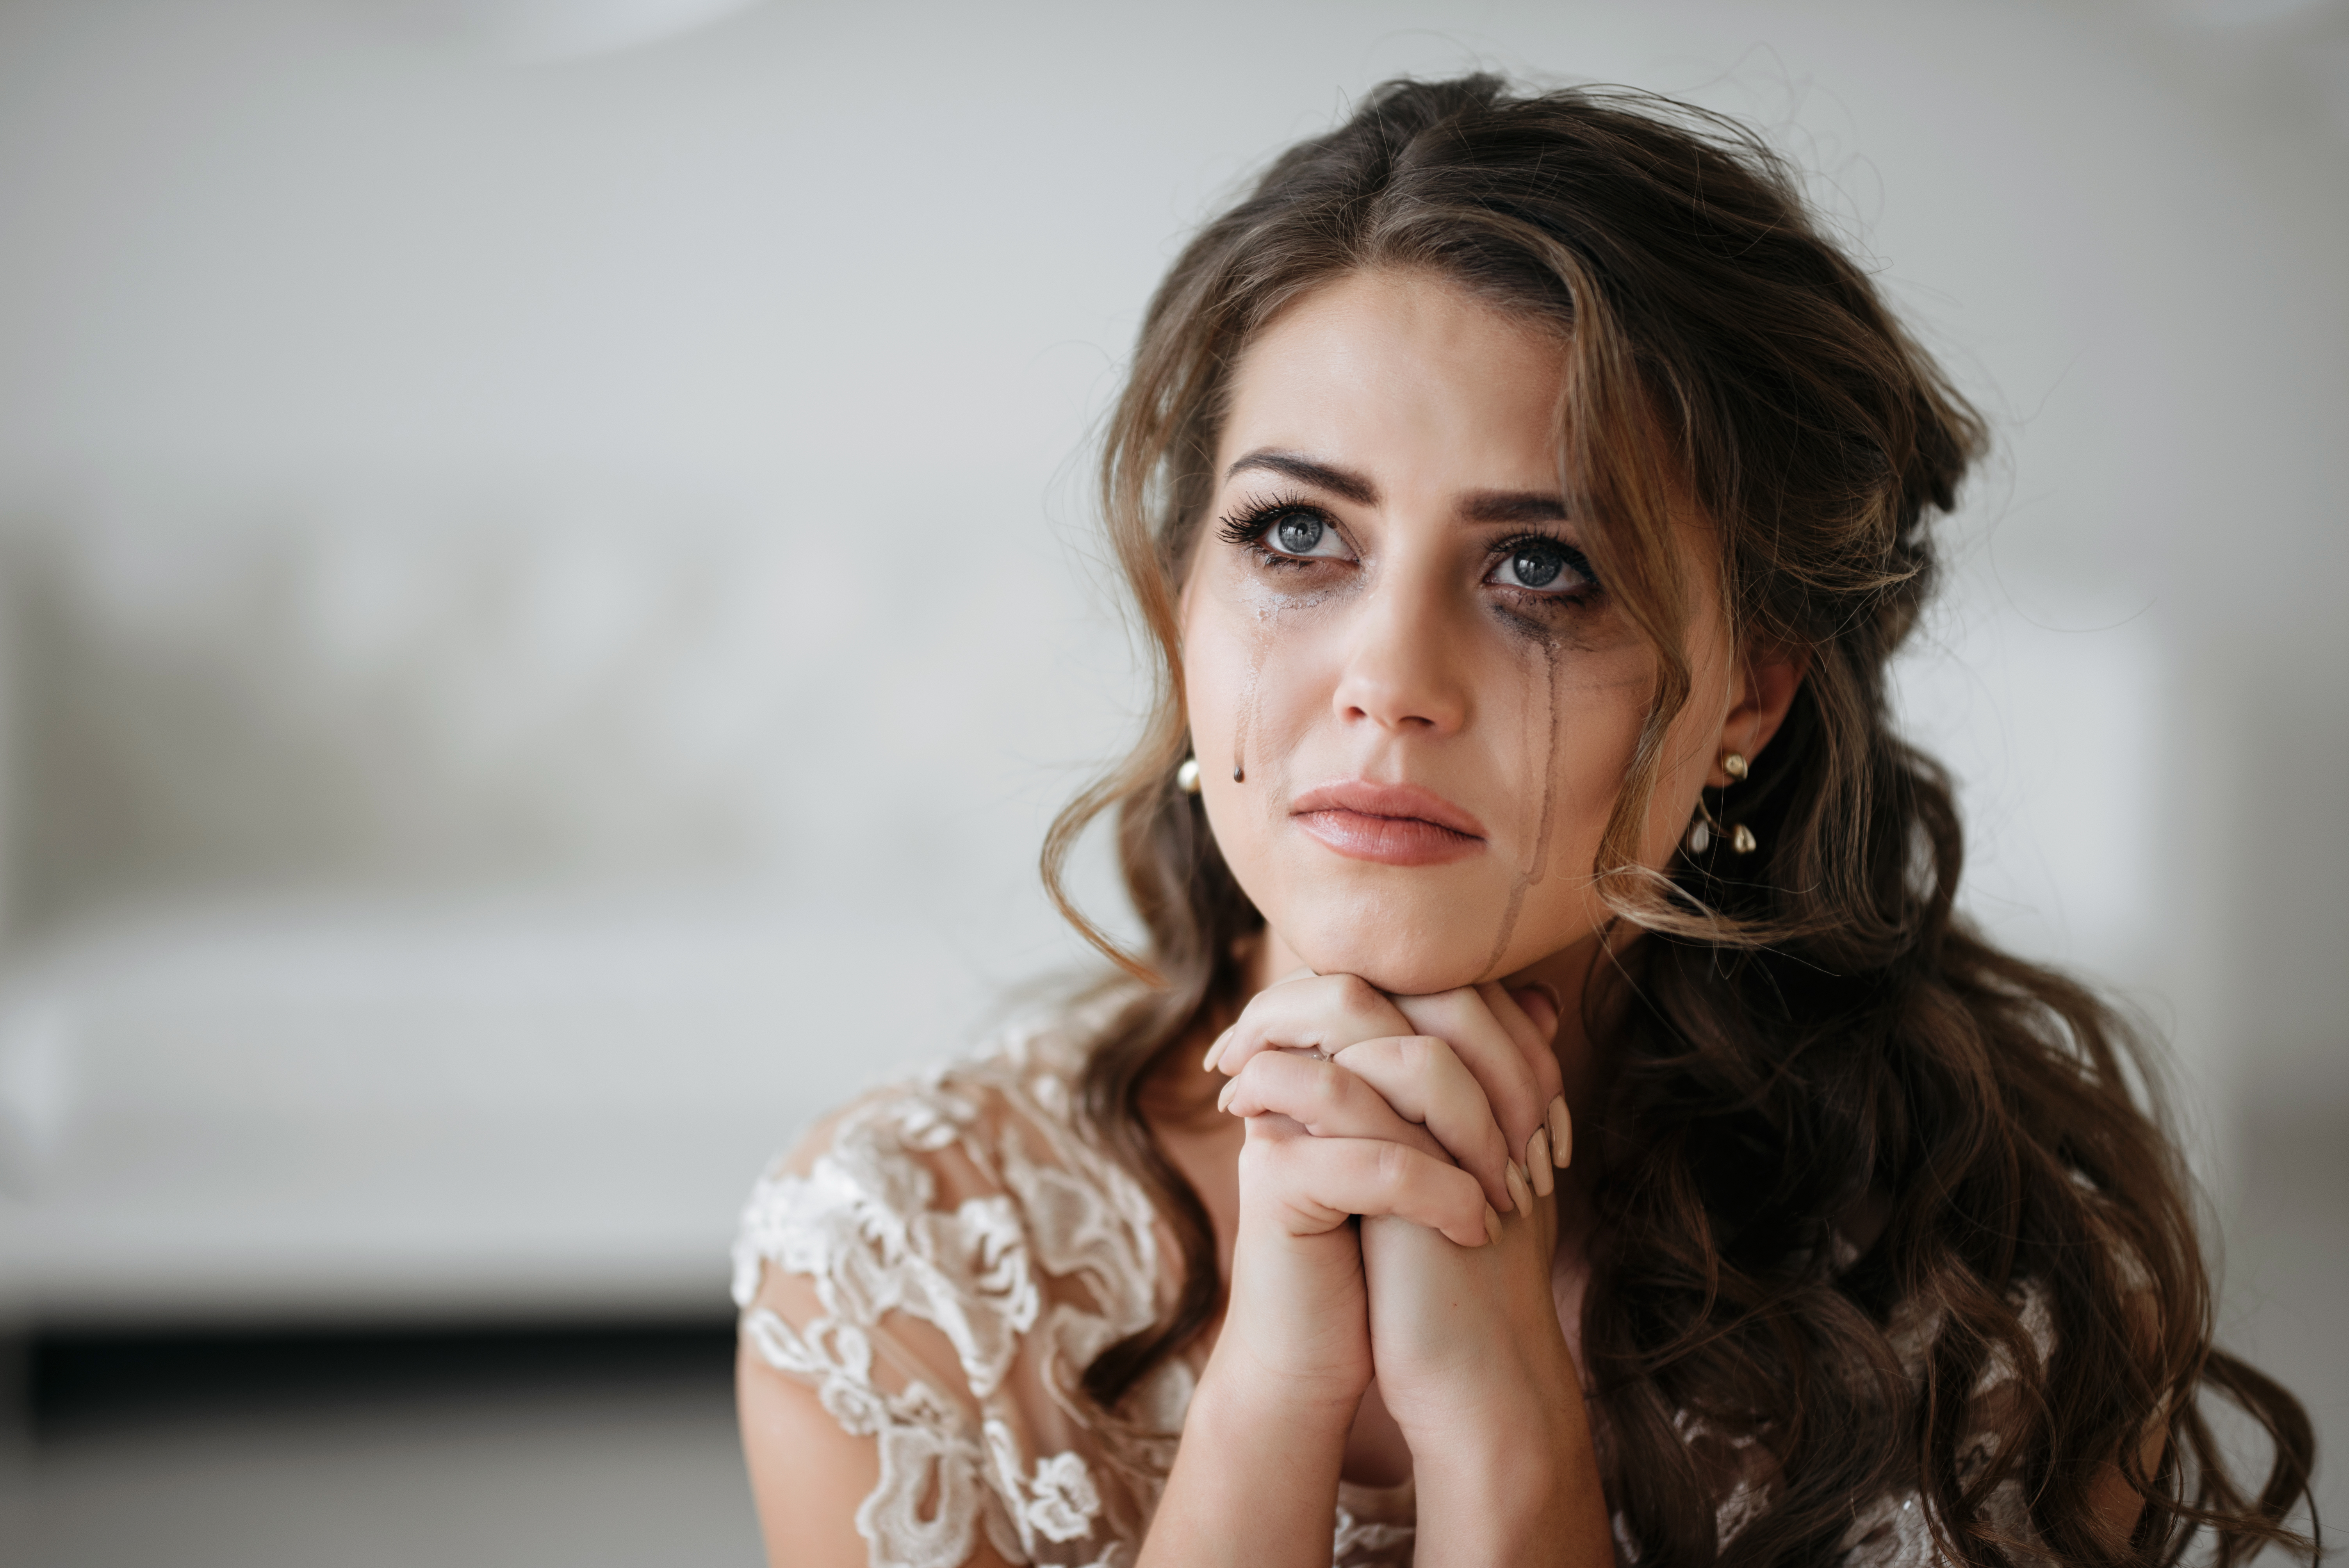 Une mariée qui pleure le jour de son mariage | Source : Shutterstock